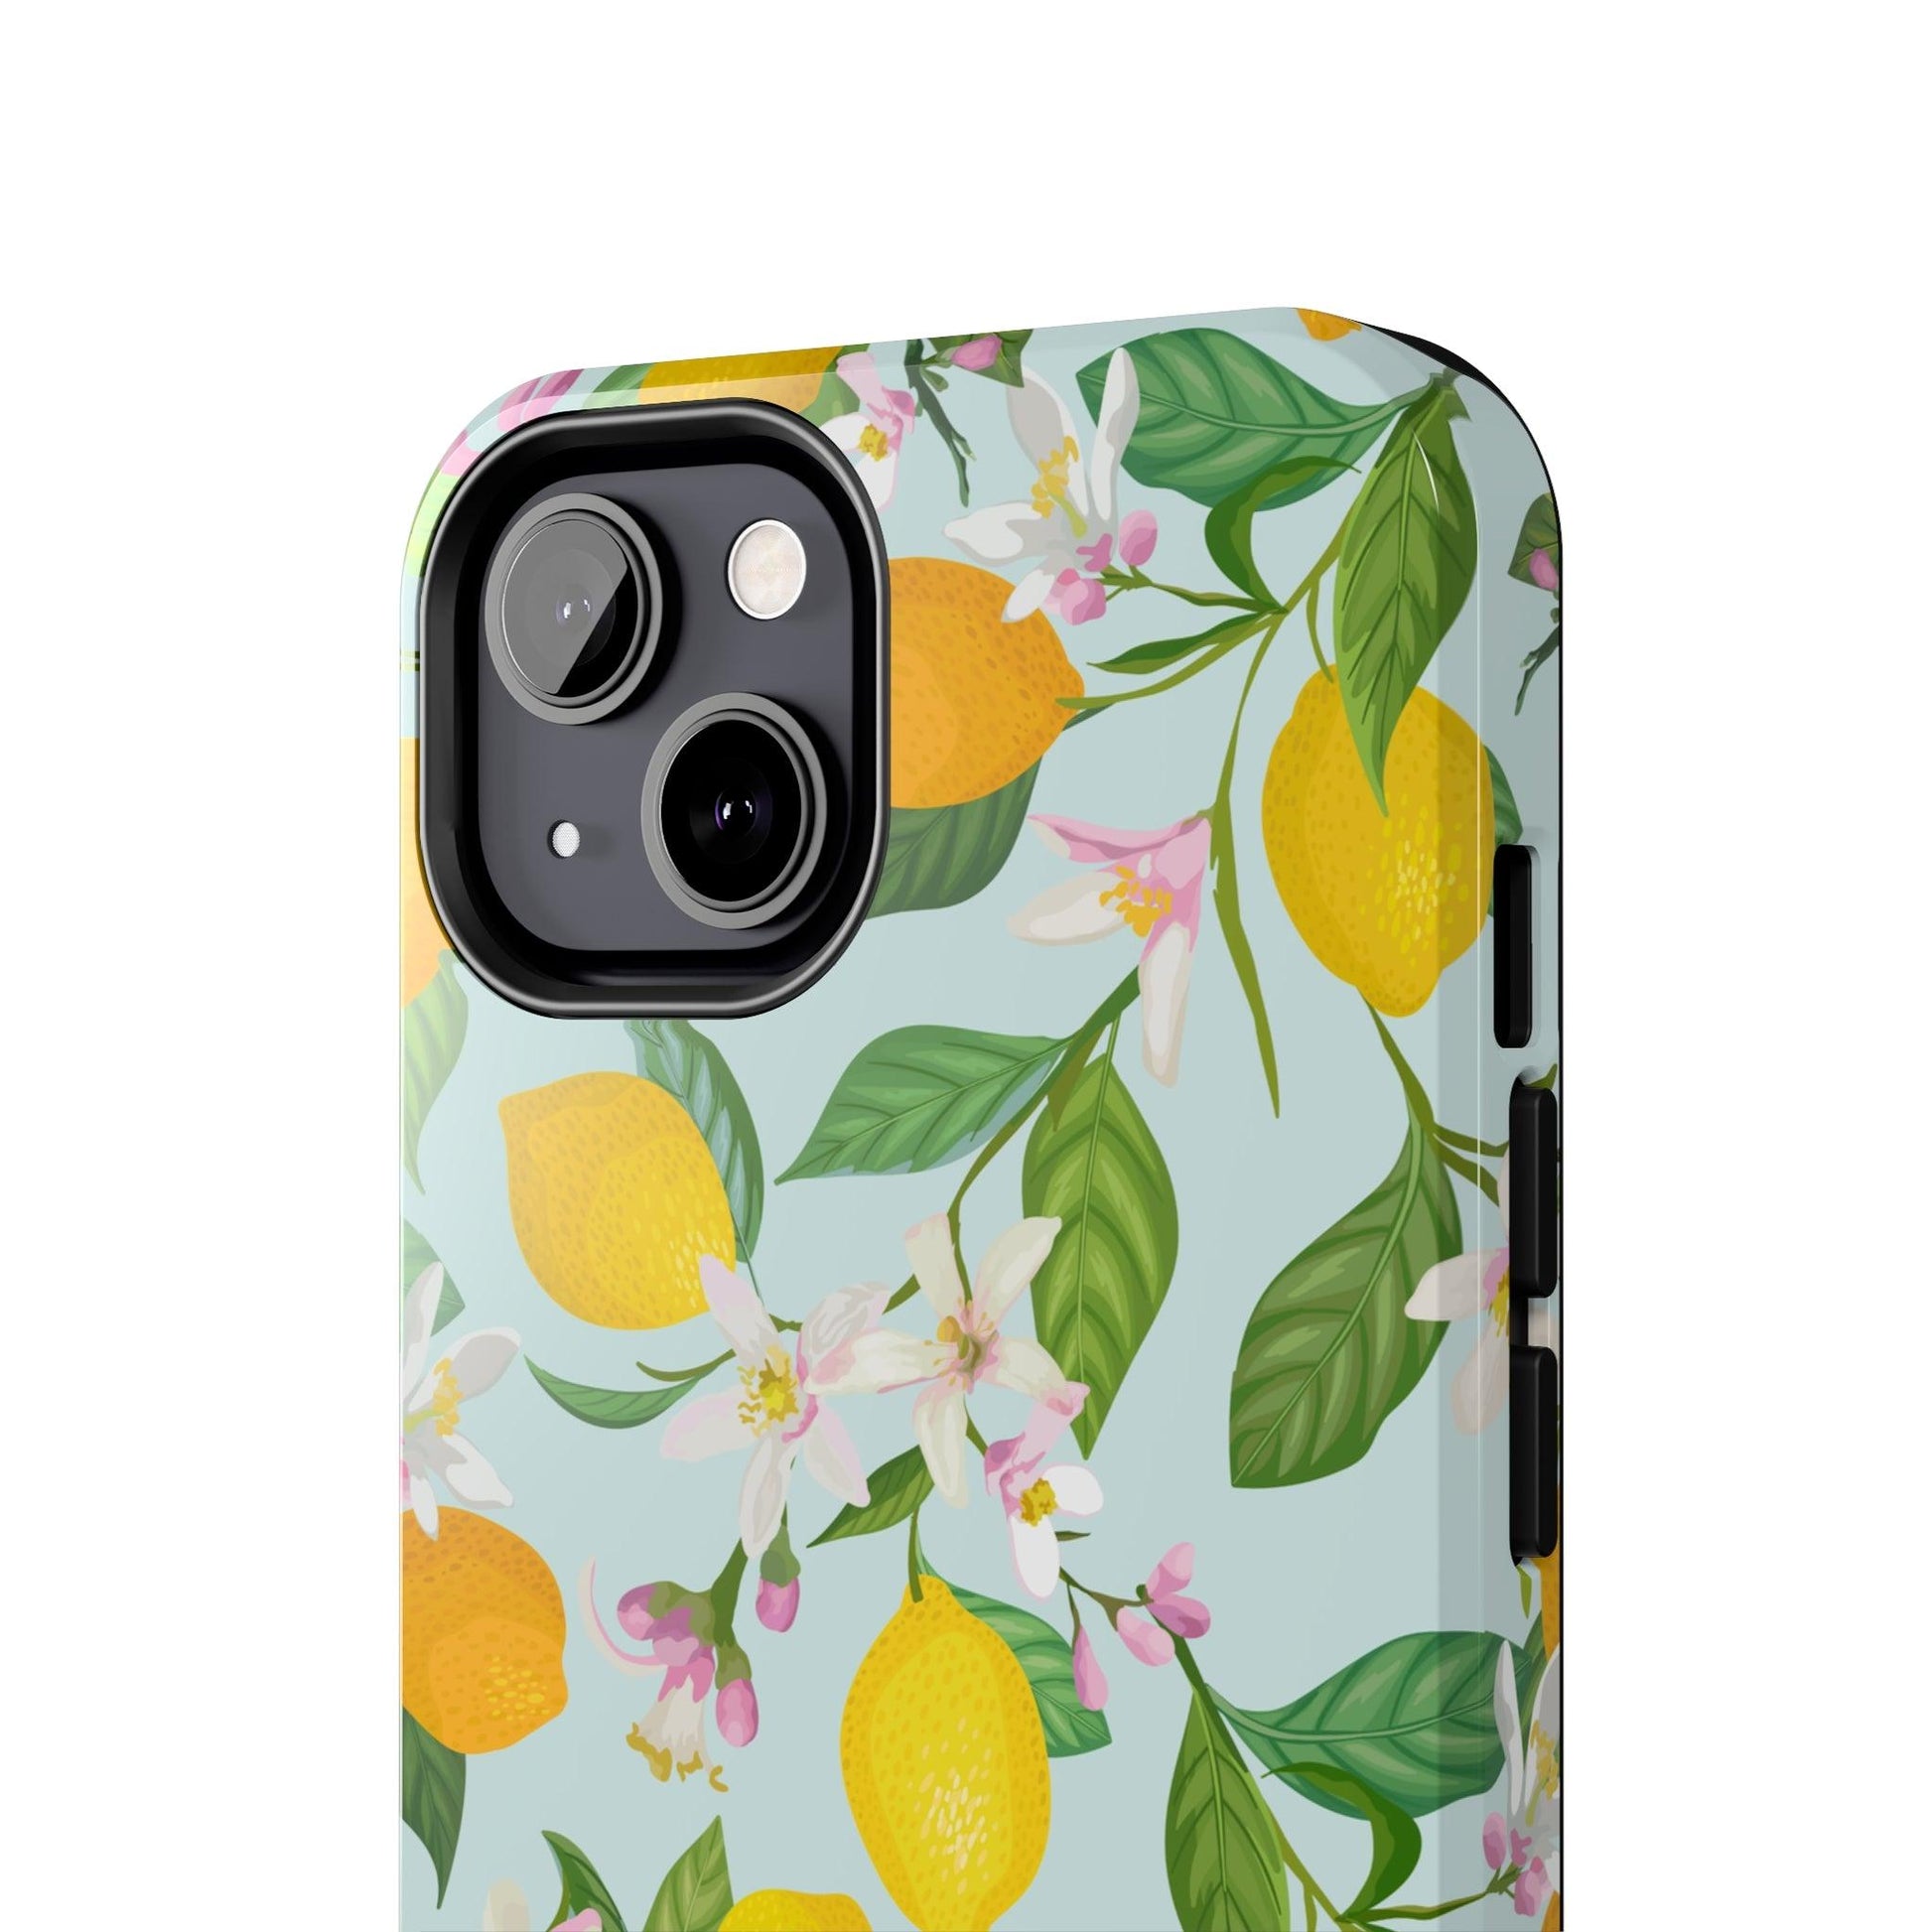 Lemon Blossoms Phone Case - Departures Print Shop